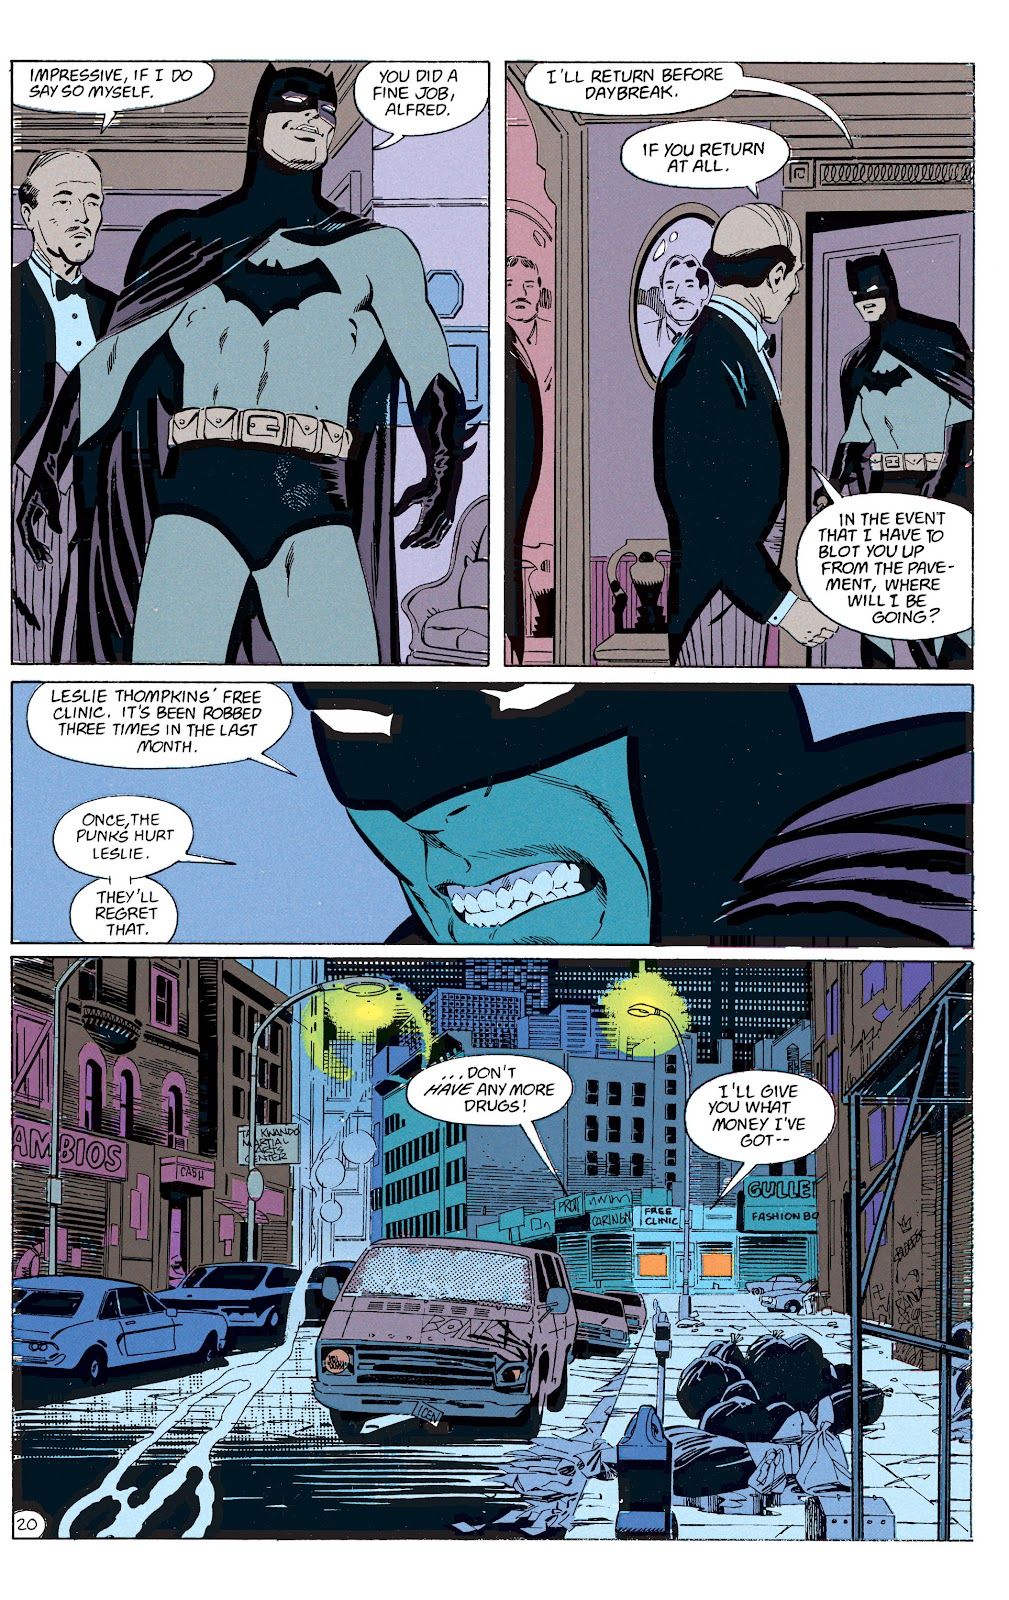 Первая реакция Альфреда на Брюса Уэйна, переодевшегося в Бэтмена, была неожиданной